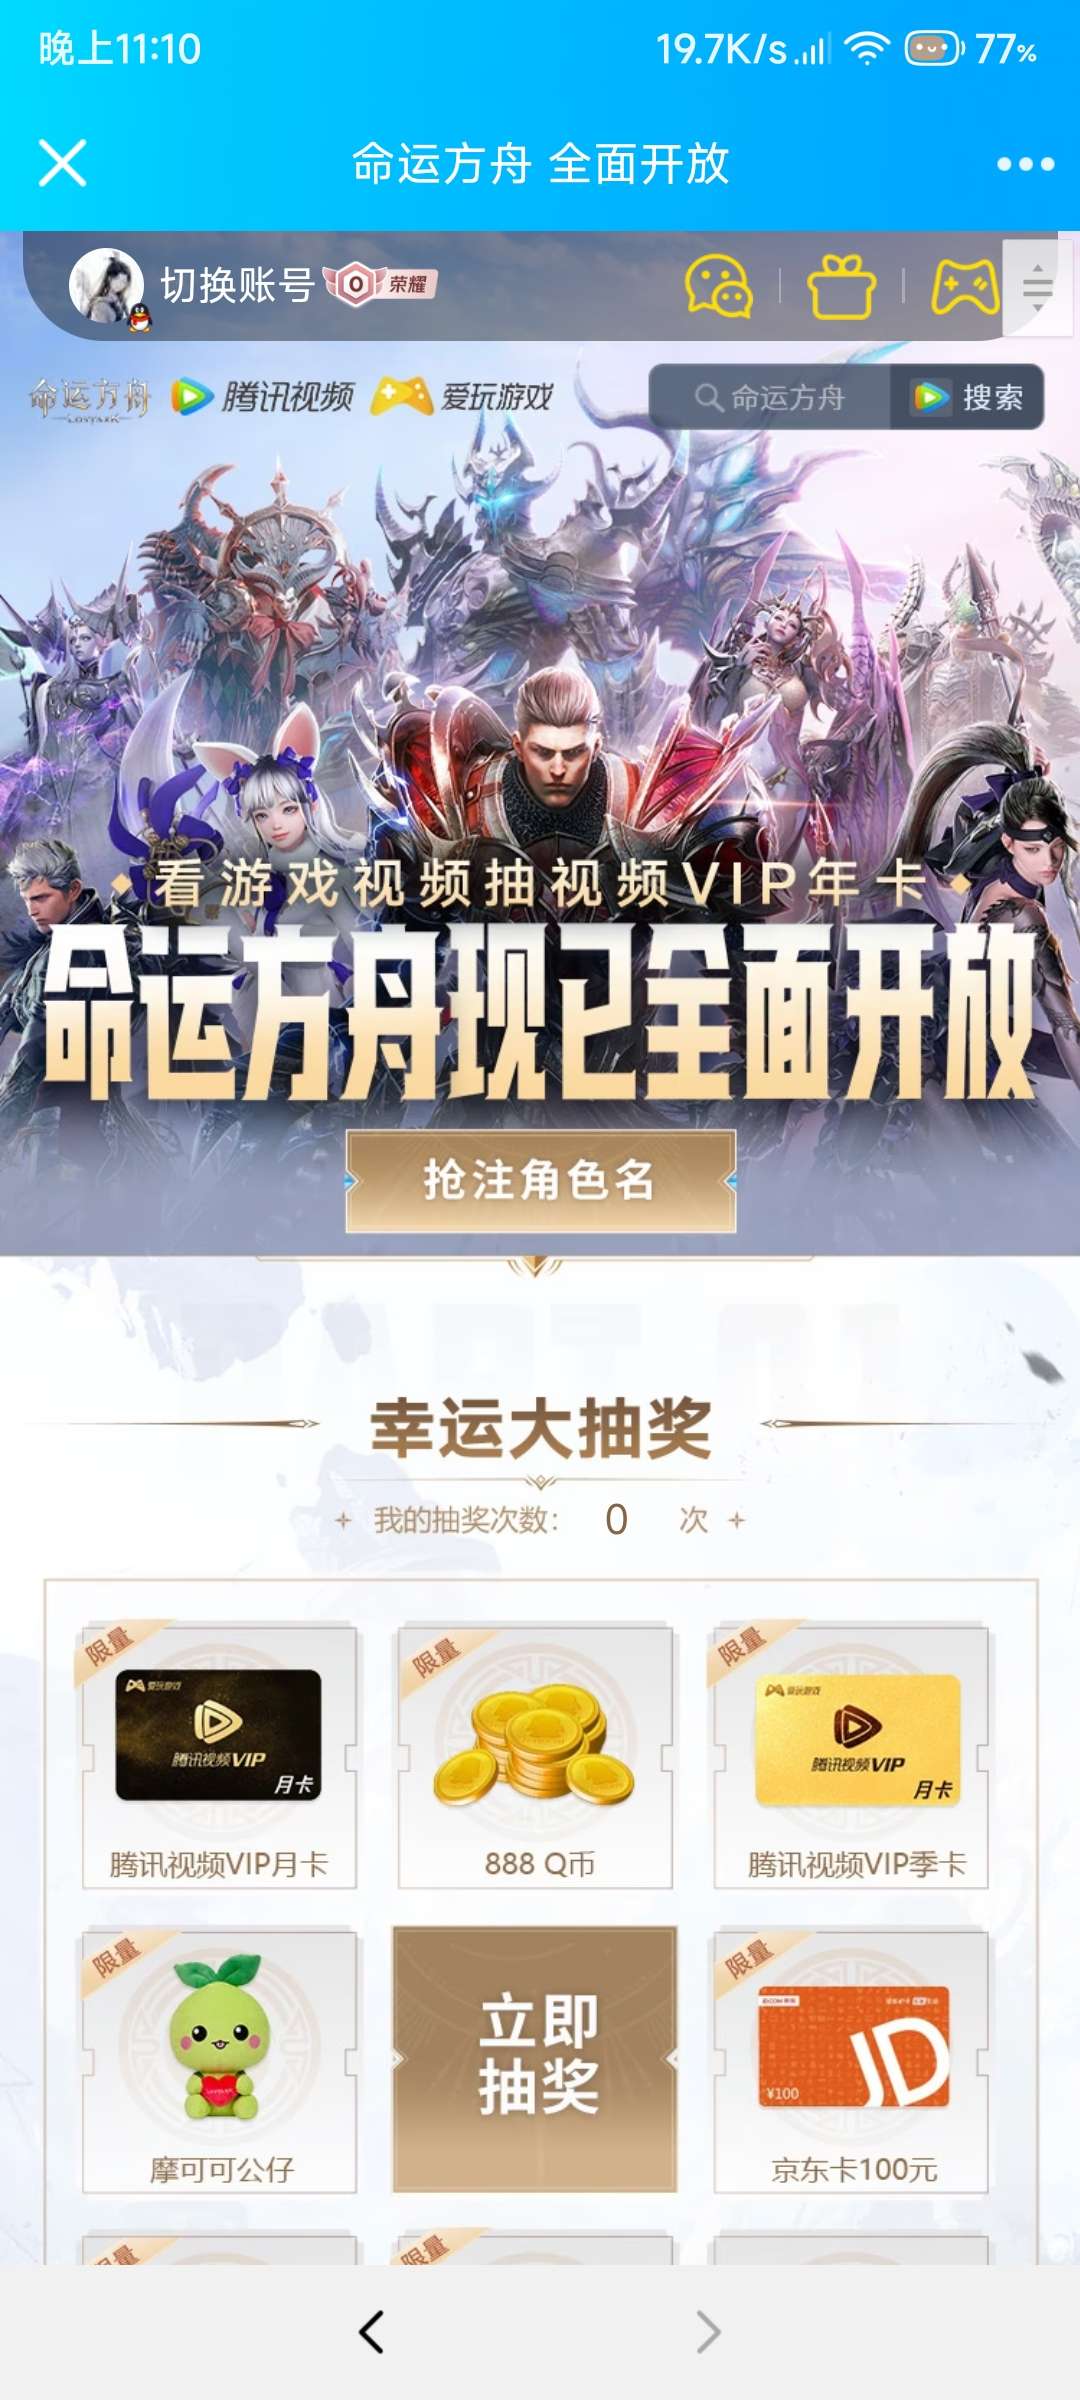 【虚拟物品】看游戏视频抽视频VIP年_福利线报